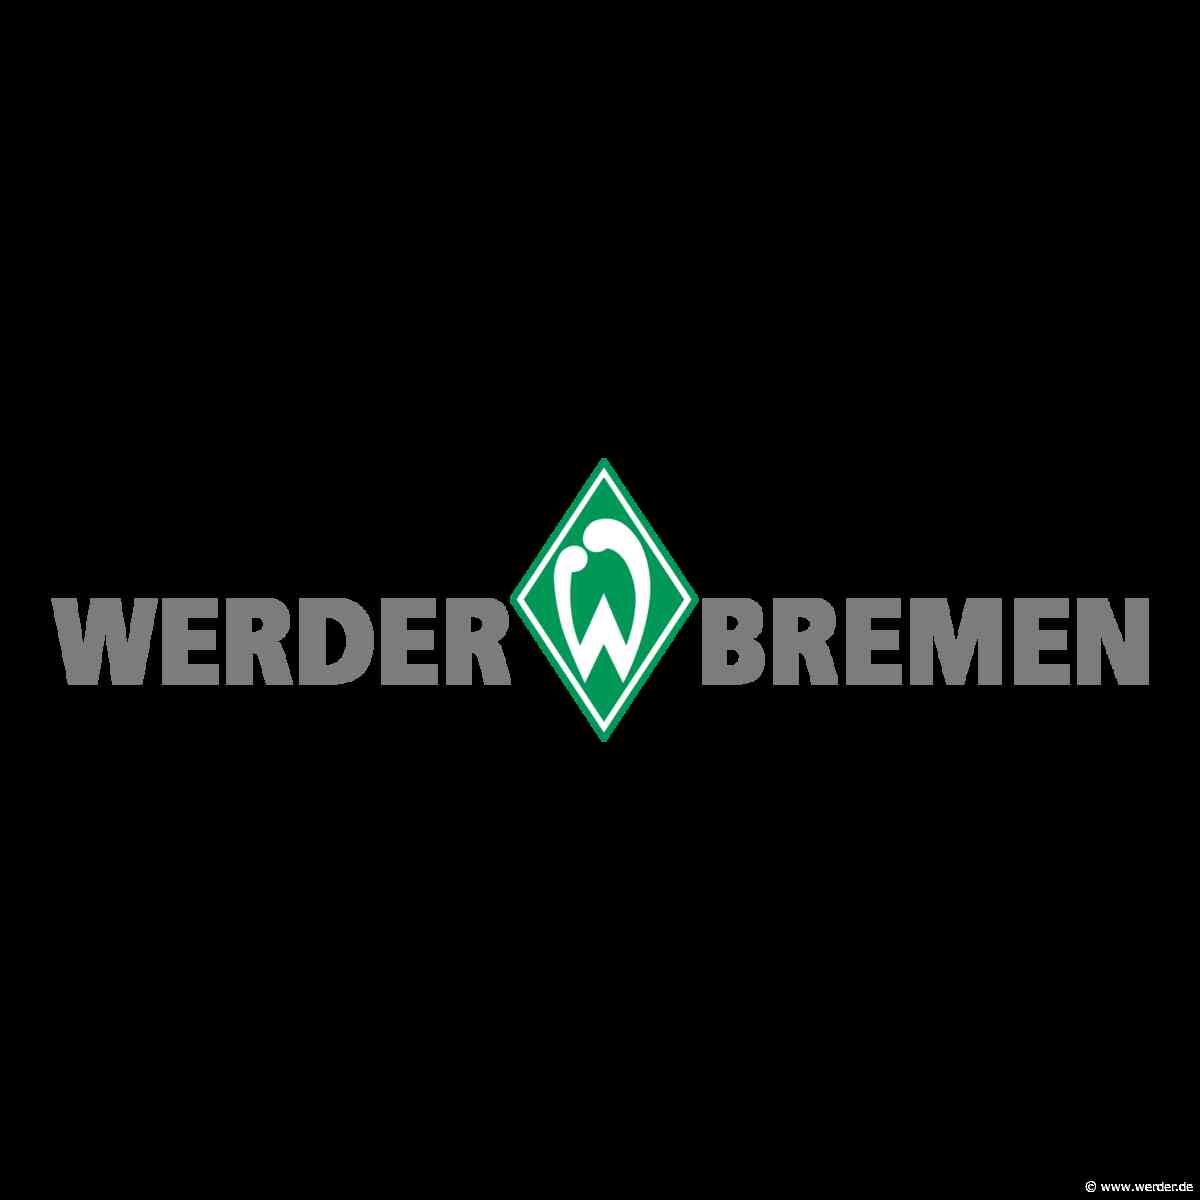 Ex-Werderaner an der Urne: 1. DFB-Pokal-Runde wird ausgelost